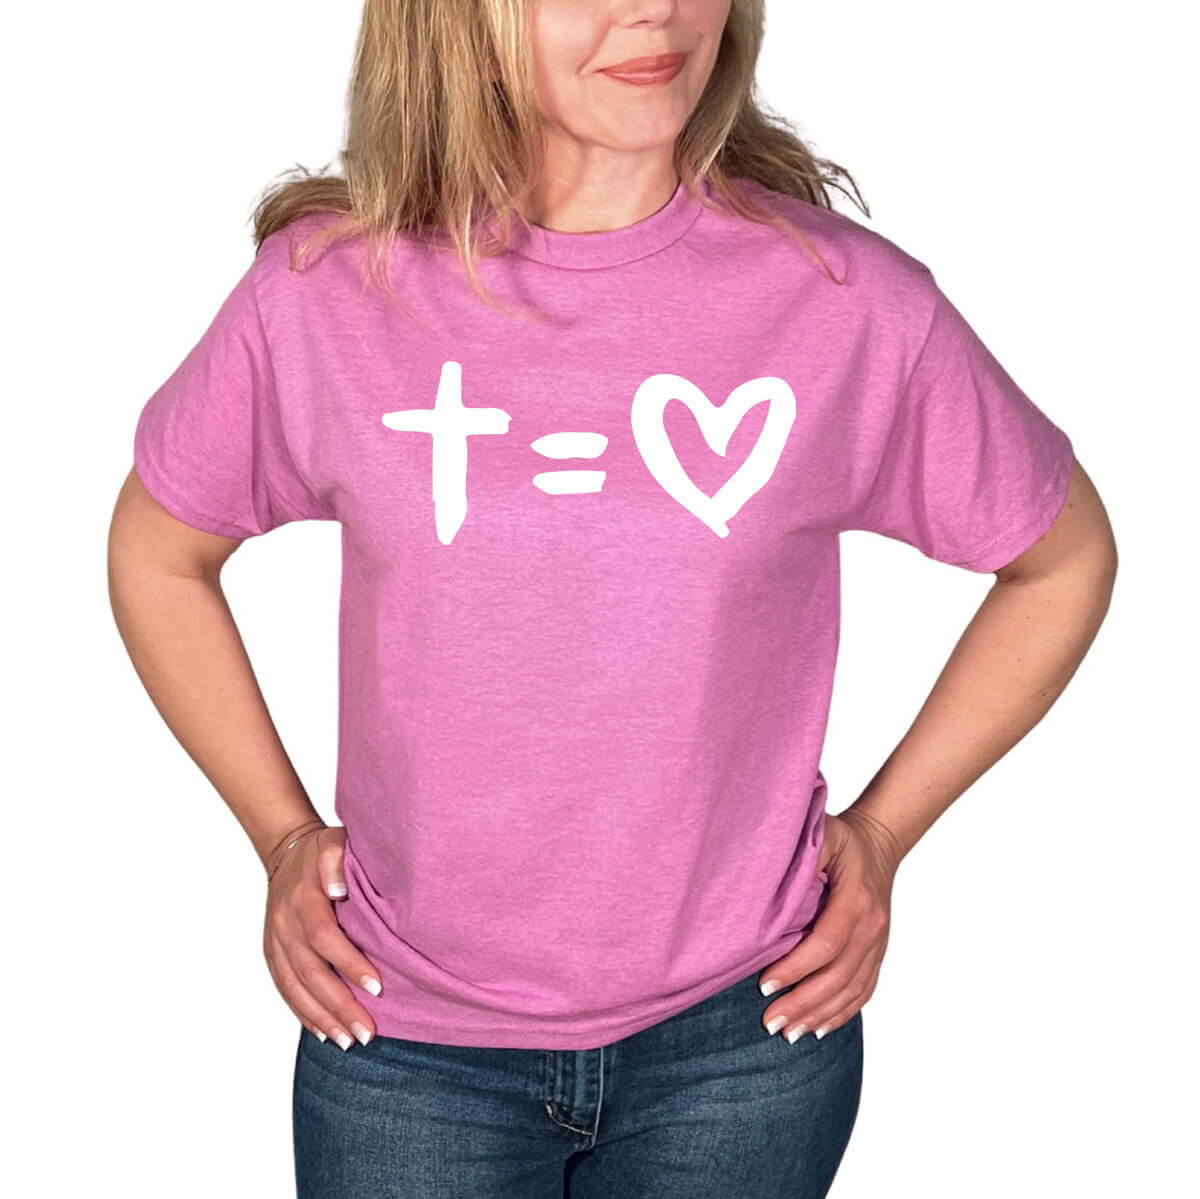 Love The Cross T-Shirt